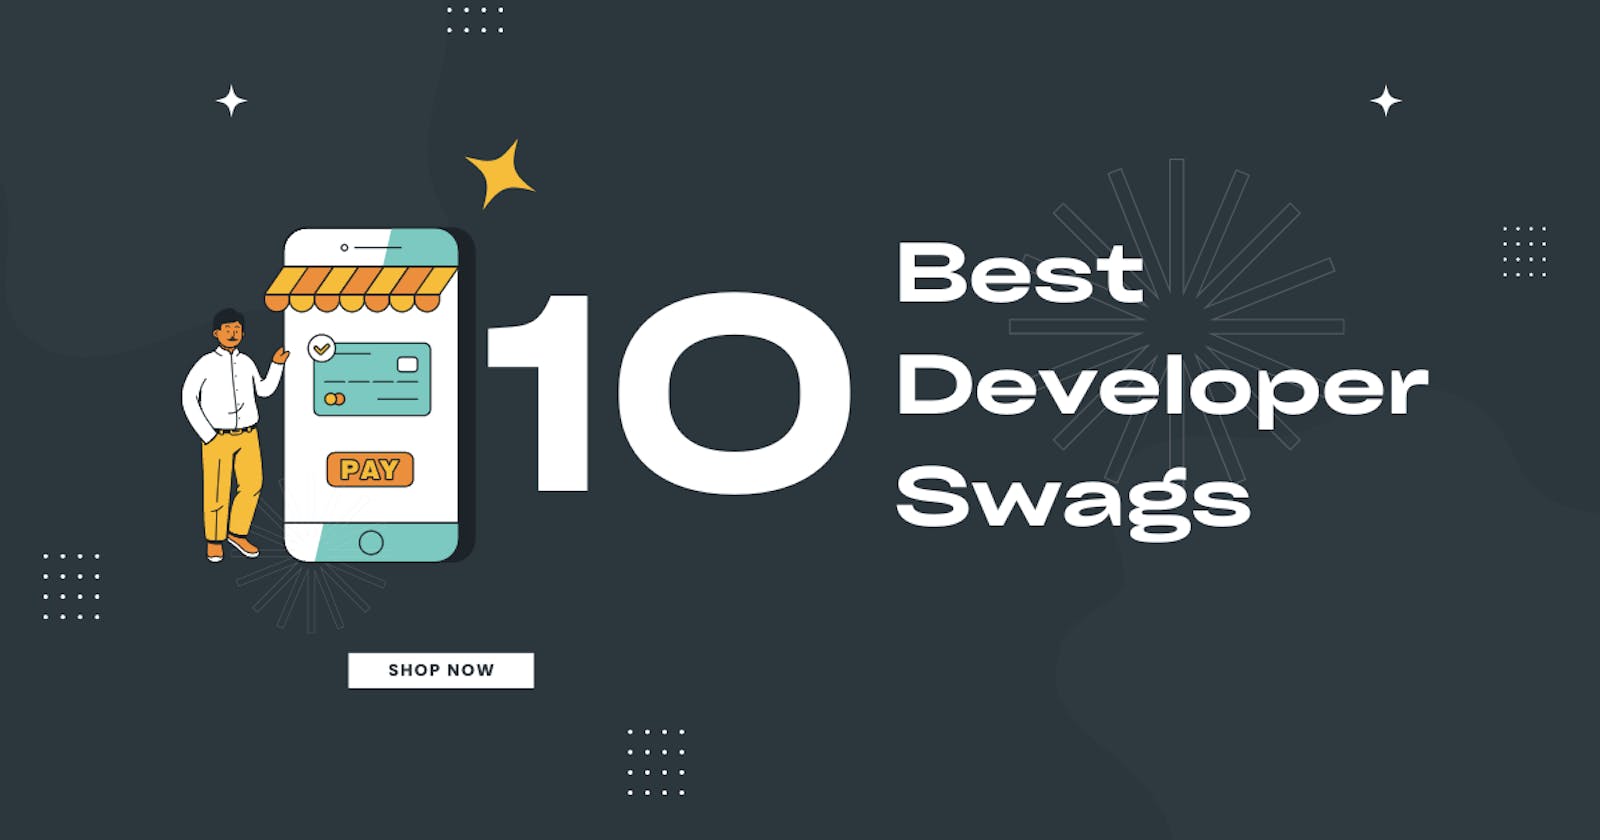 10 Best Developer Swags for 2023